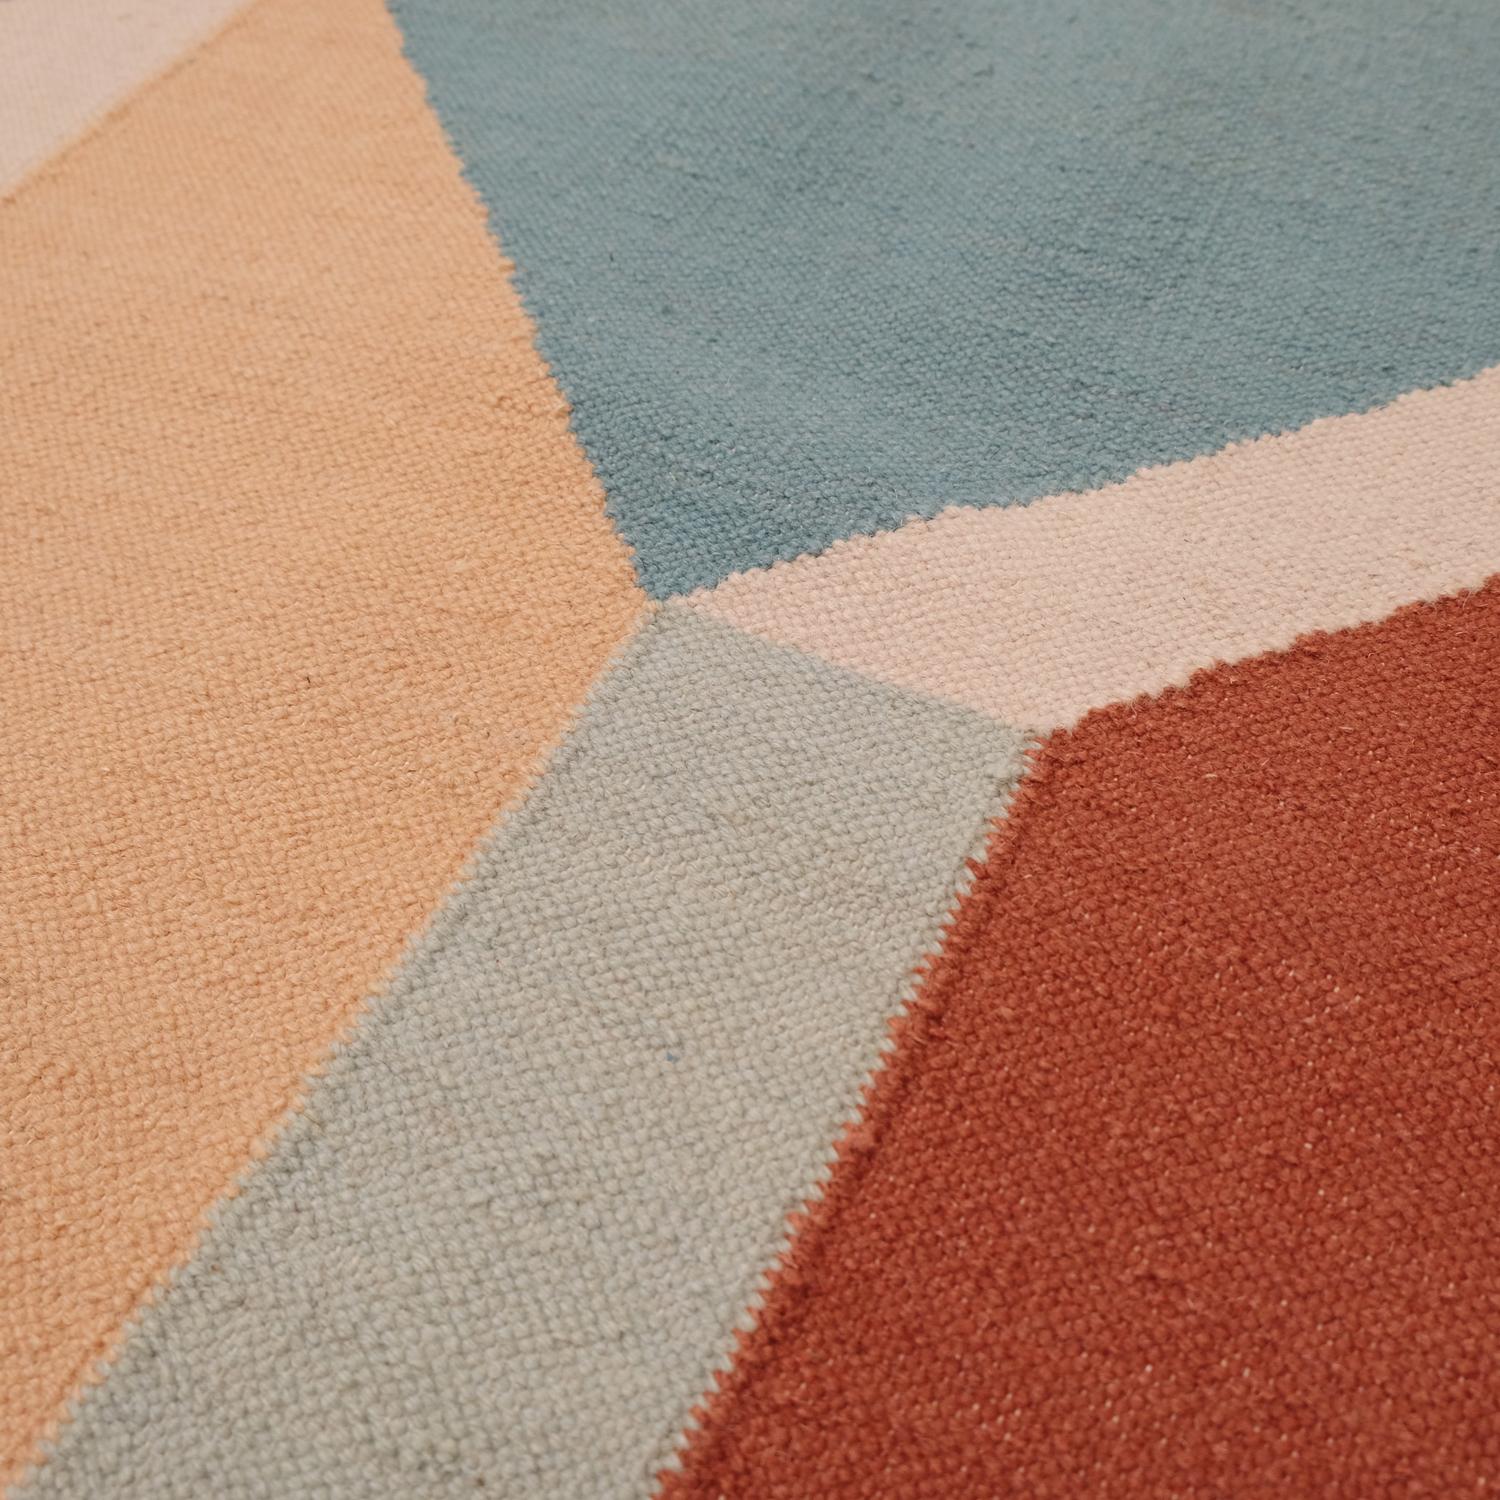 Afternoon Dream - Designteppich Ouwen Mori Kilim Teppich Wolle Baumwolle Handgewebt Warm
Nachmittags-Traum

Auf diesem Teppich wird die Geometrie zu einer unregelmäßigen Perspektive der architektonischen Formen neu zusammengesetzt. Die Farbe